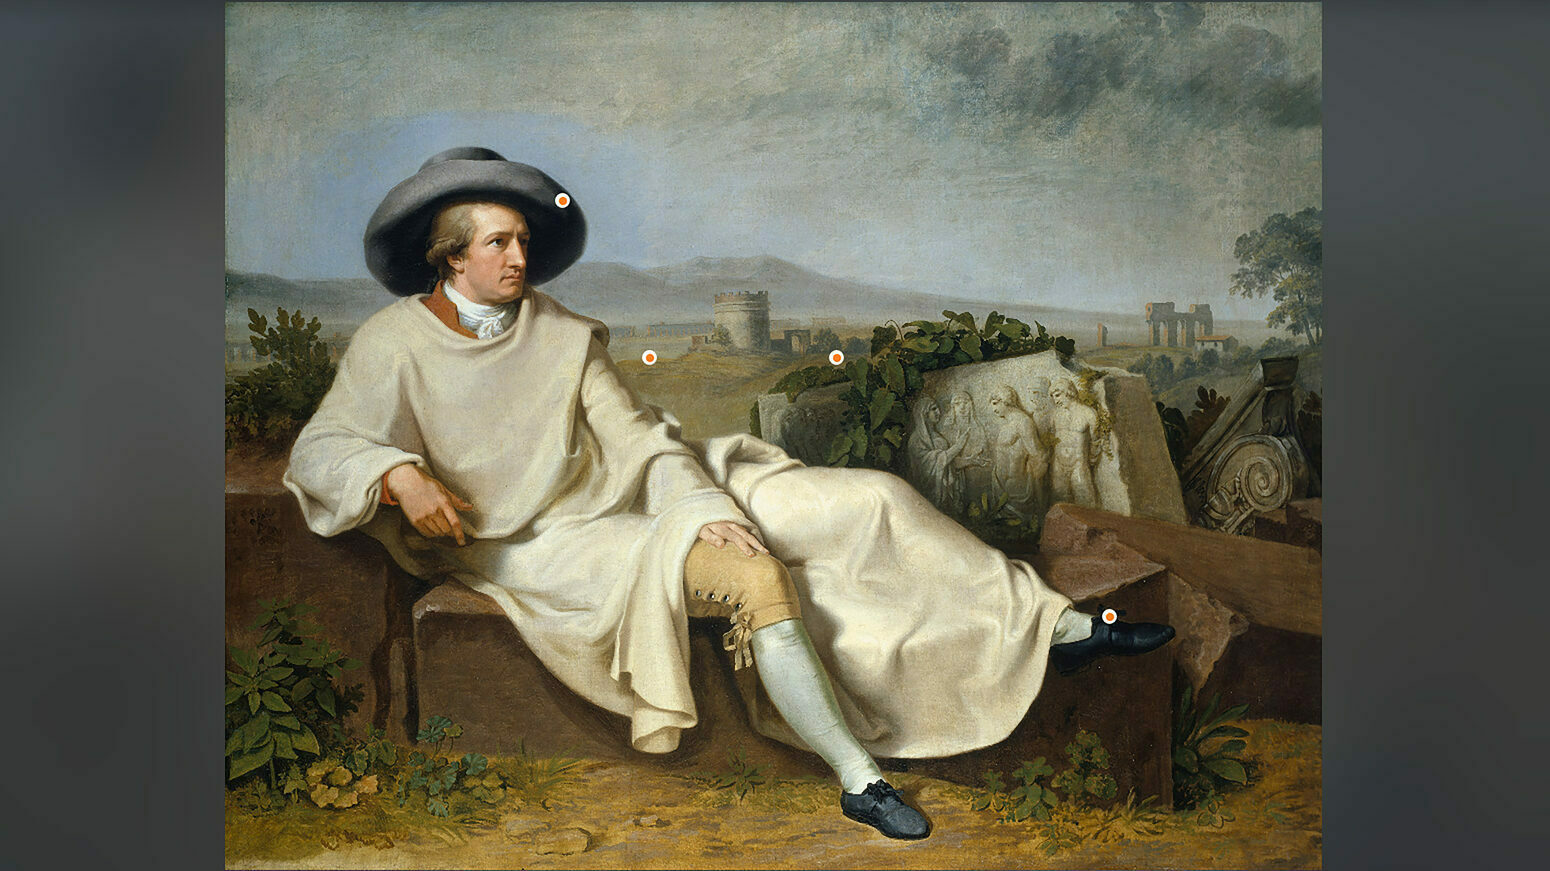 ZDFkultur - Das Geheimnis der Bilder, Goethe in der römischen Campagna, 1787, ZDFDigital, ZDF